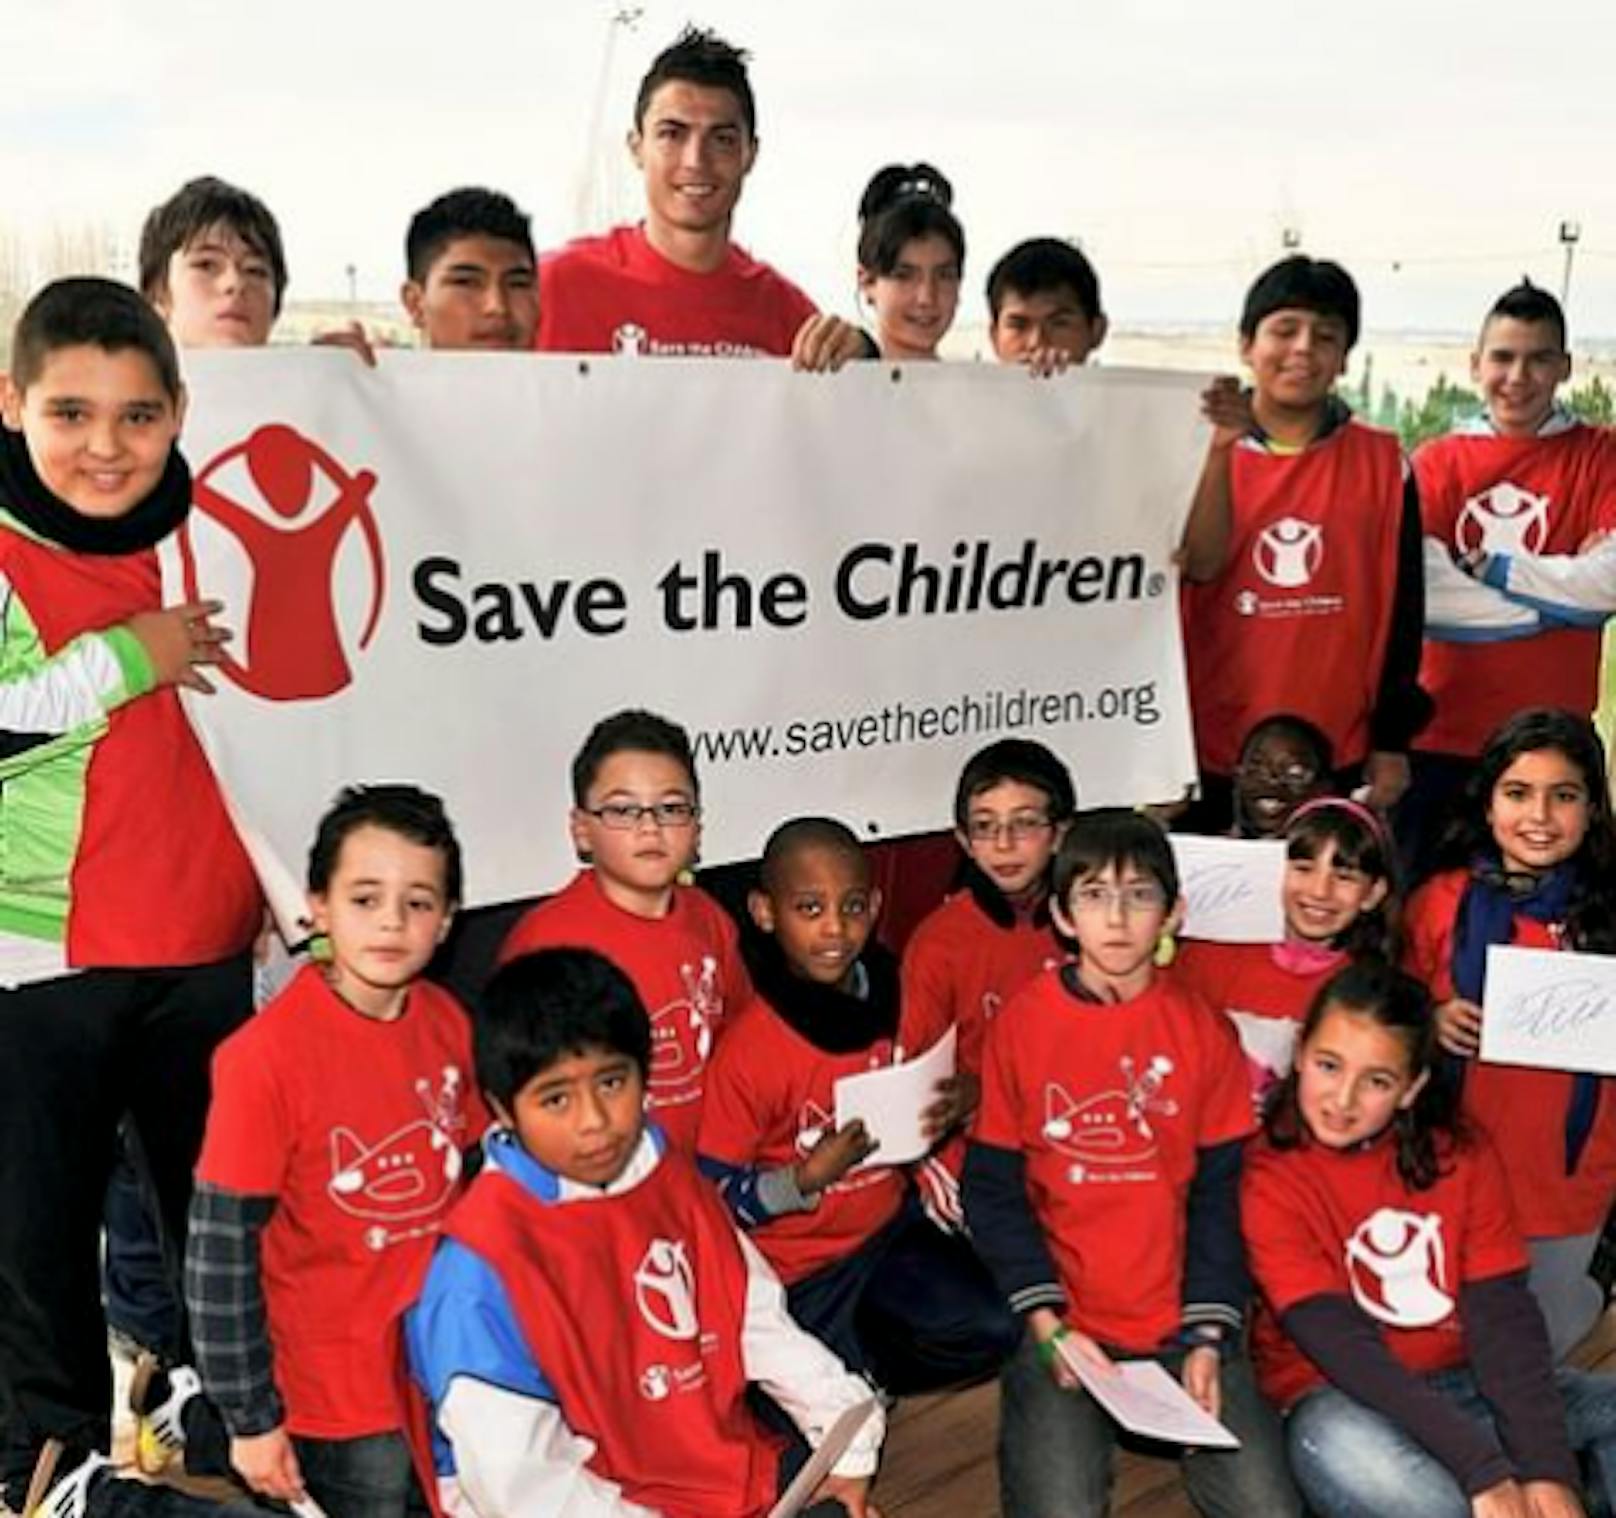 "Save the Children" distanziert sich von Botschafter Cristiano Ronaldo.